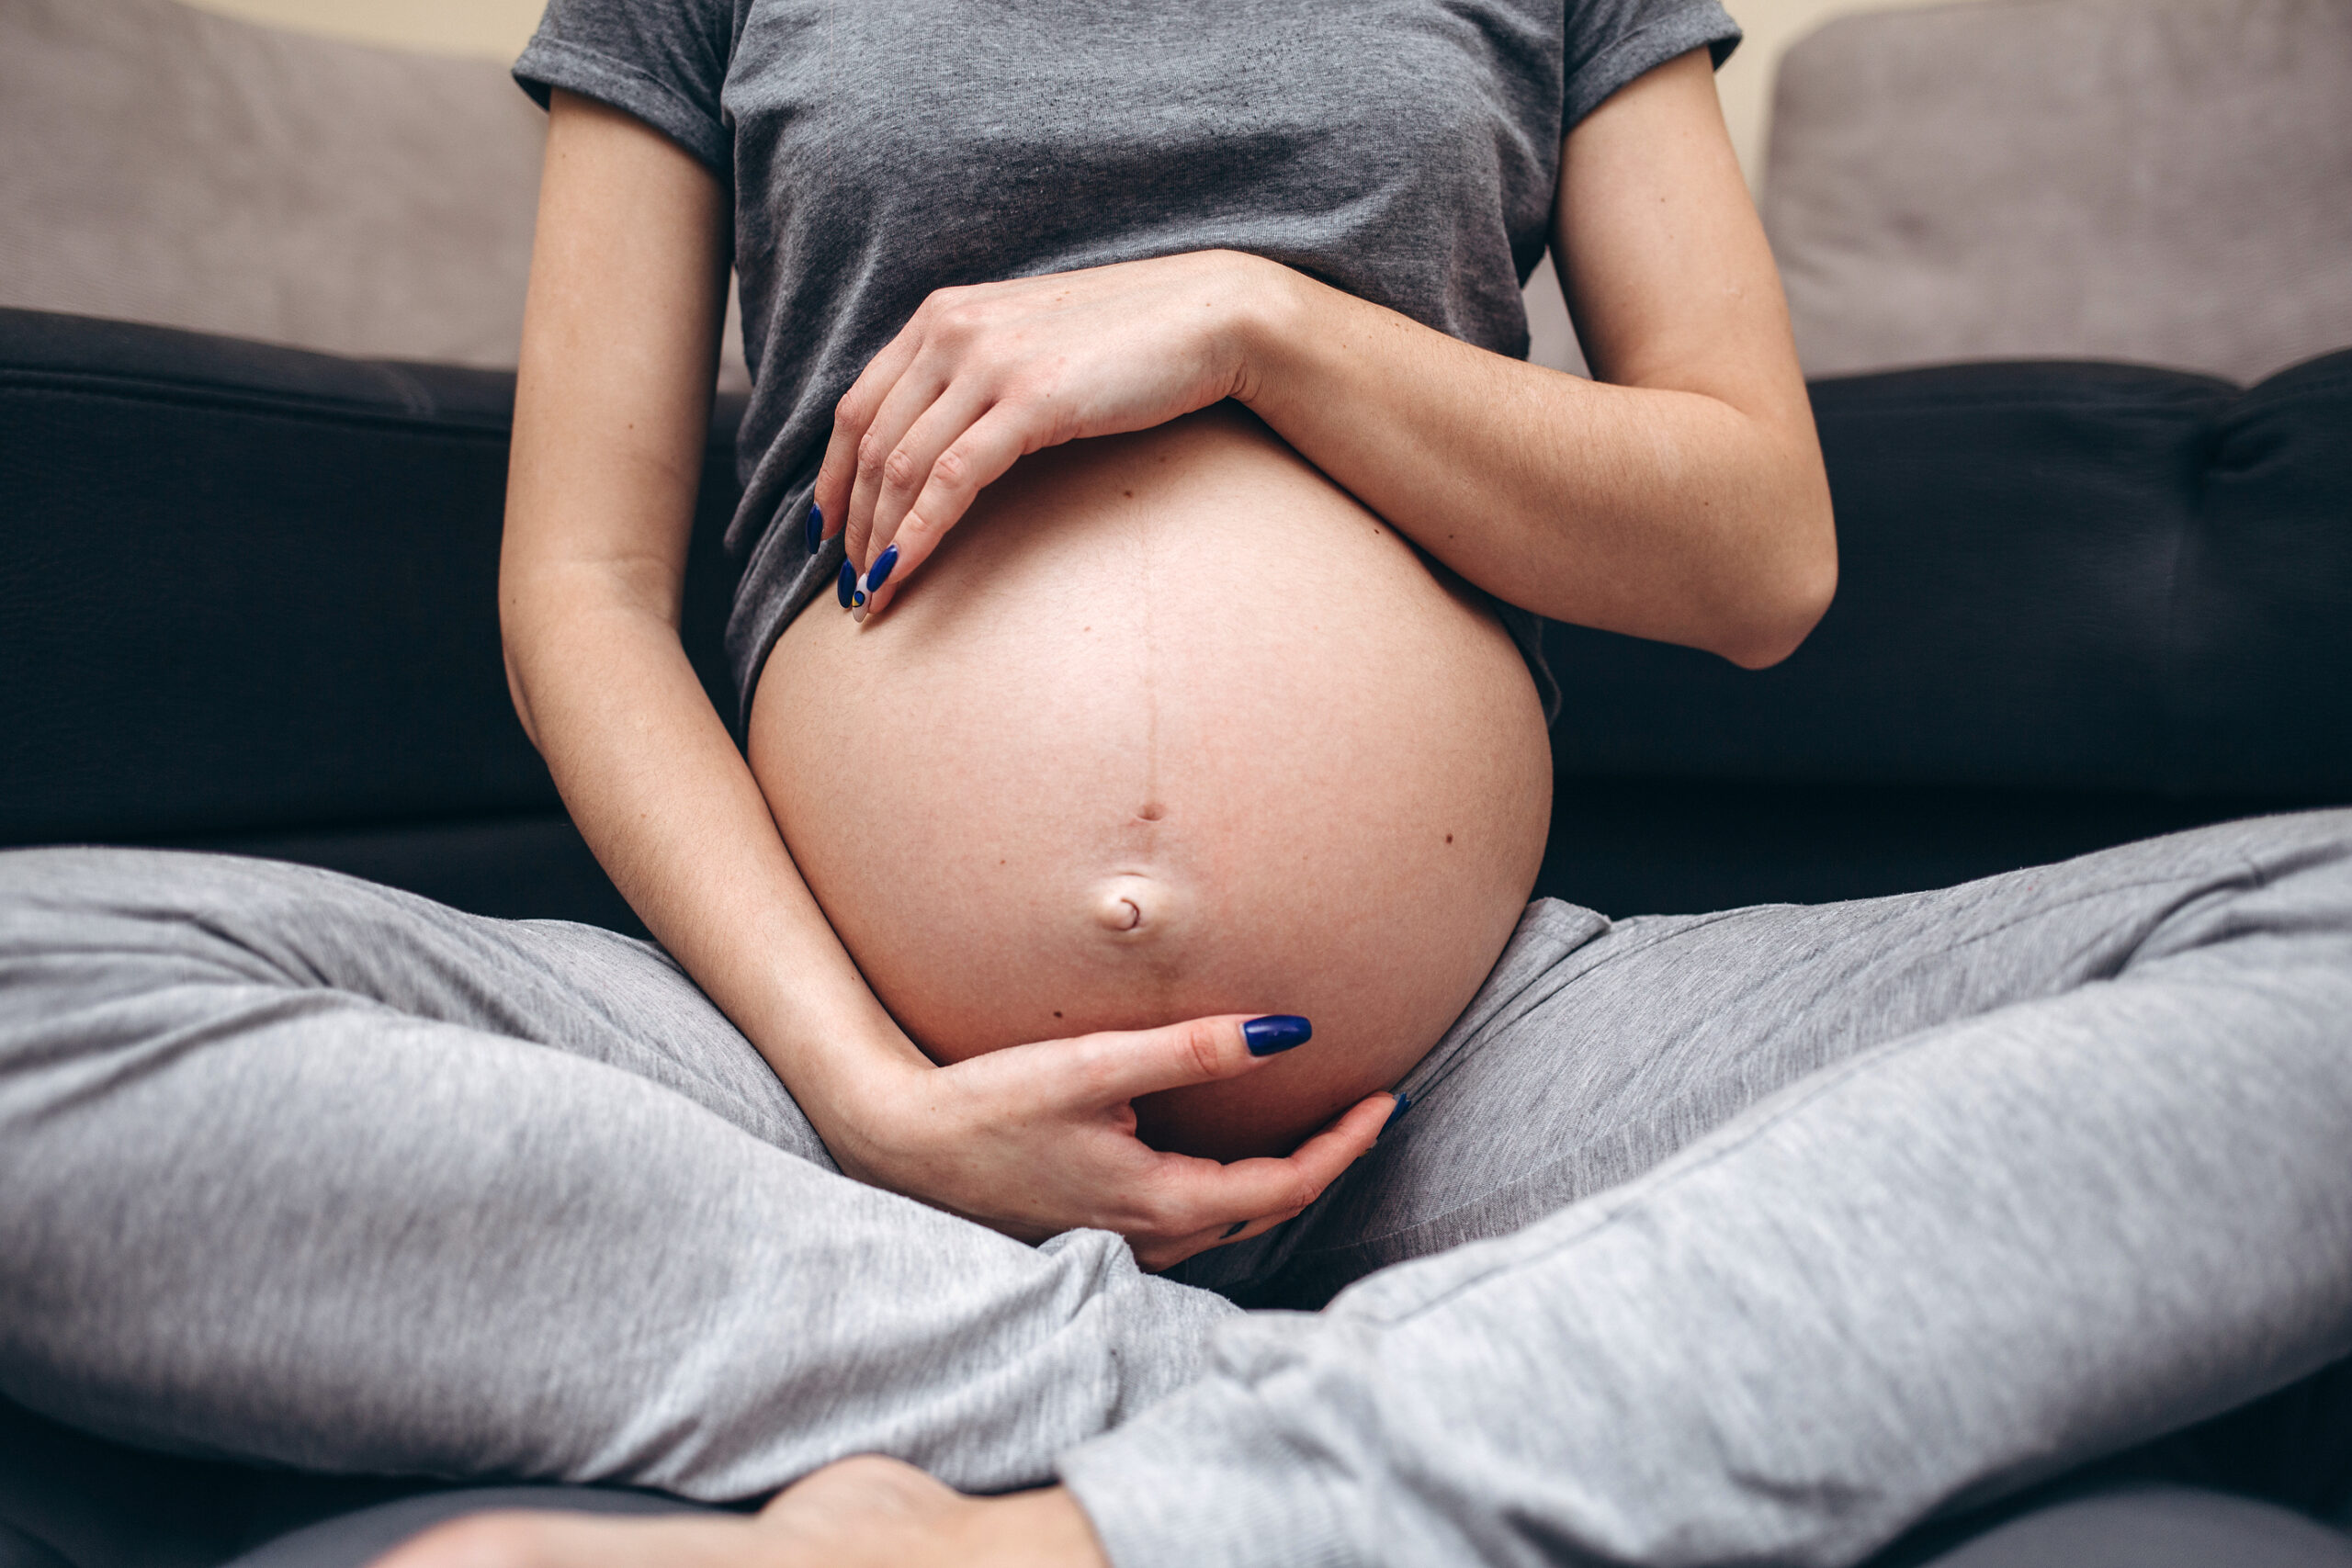 Hablar al bebé en el útero beneficia su desarrollo neuronal